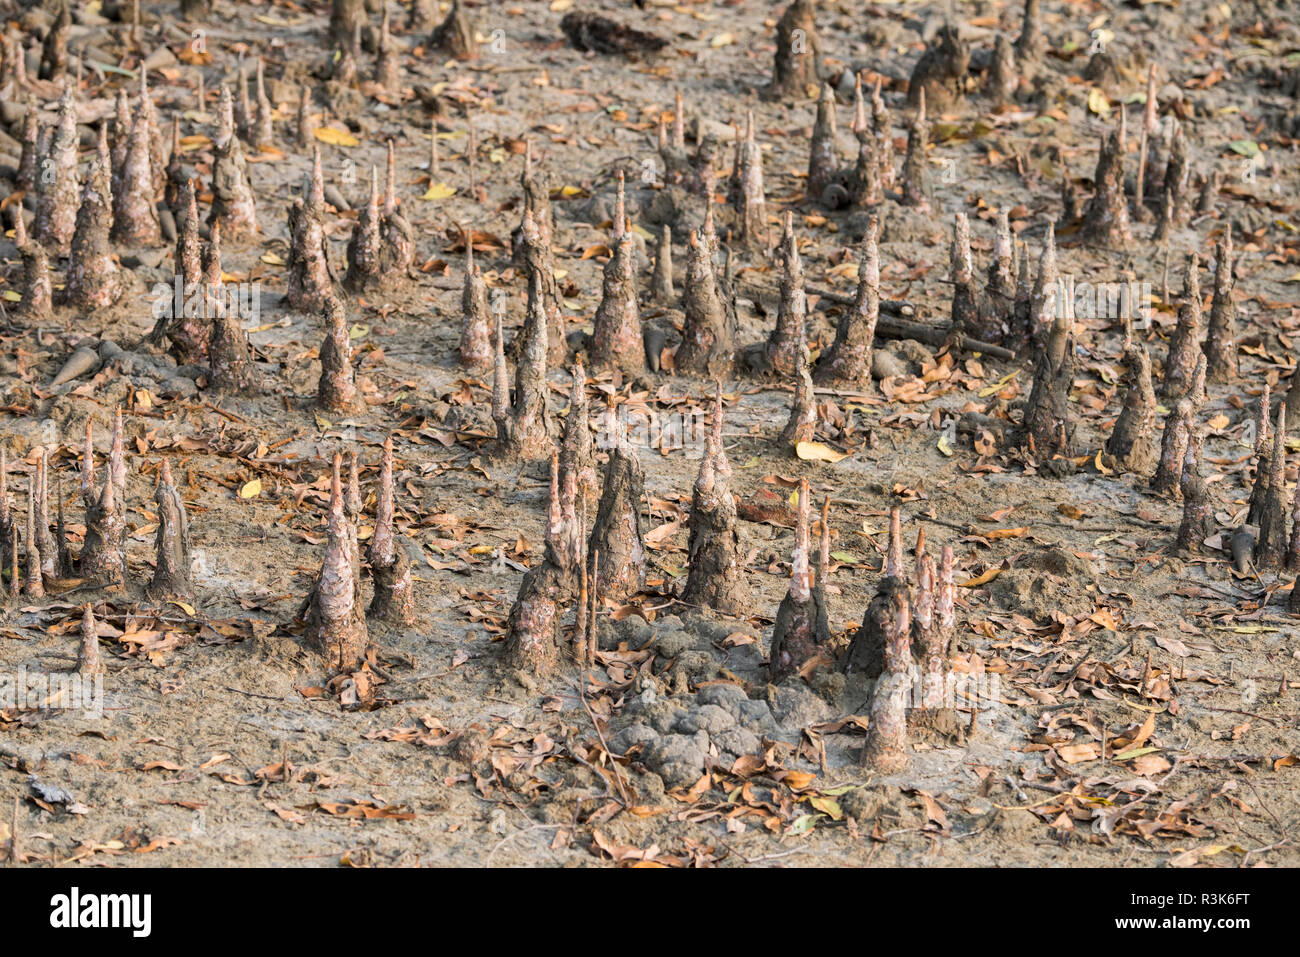 Il Bangladesh, il Parco Nazionale della Sundarbans vicino Hiron Point. Habitat di mangrovie, specializzato sistema di radice denominato pneumatofori o "radici di respirazione". Foto Stock